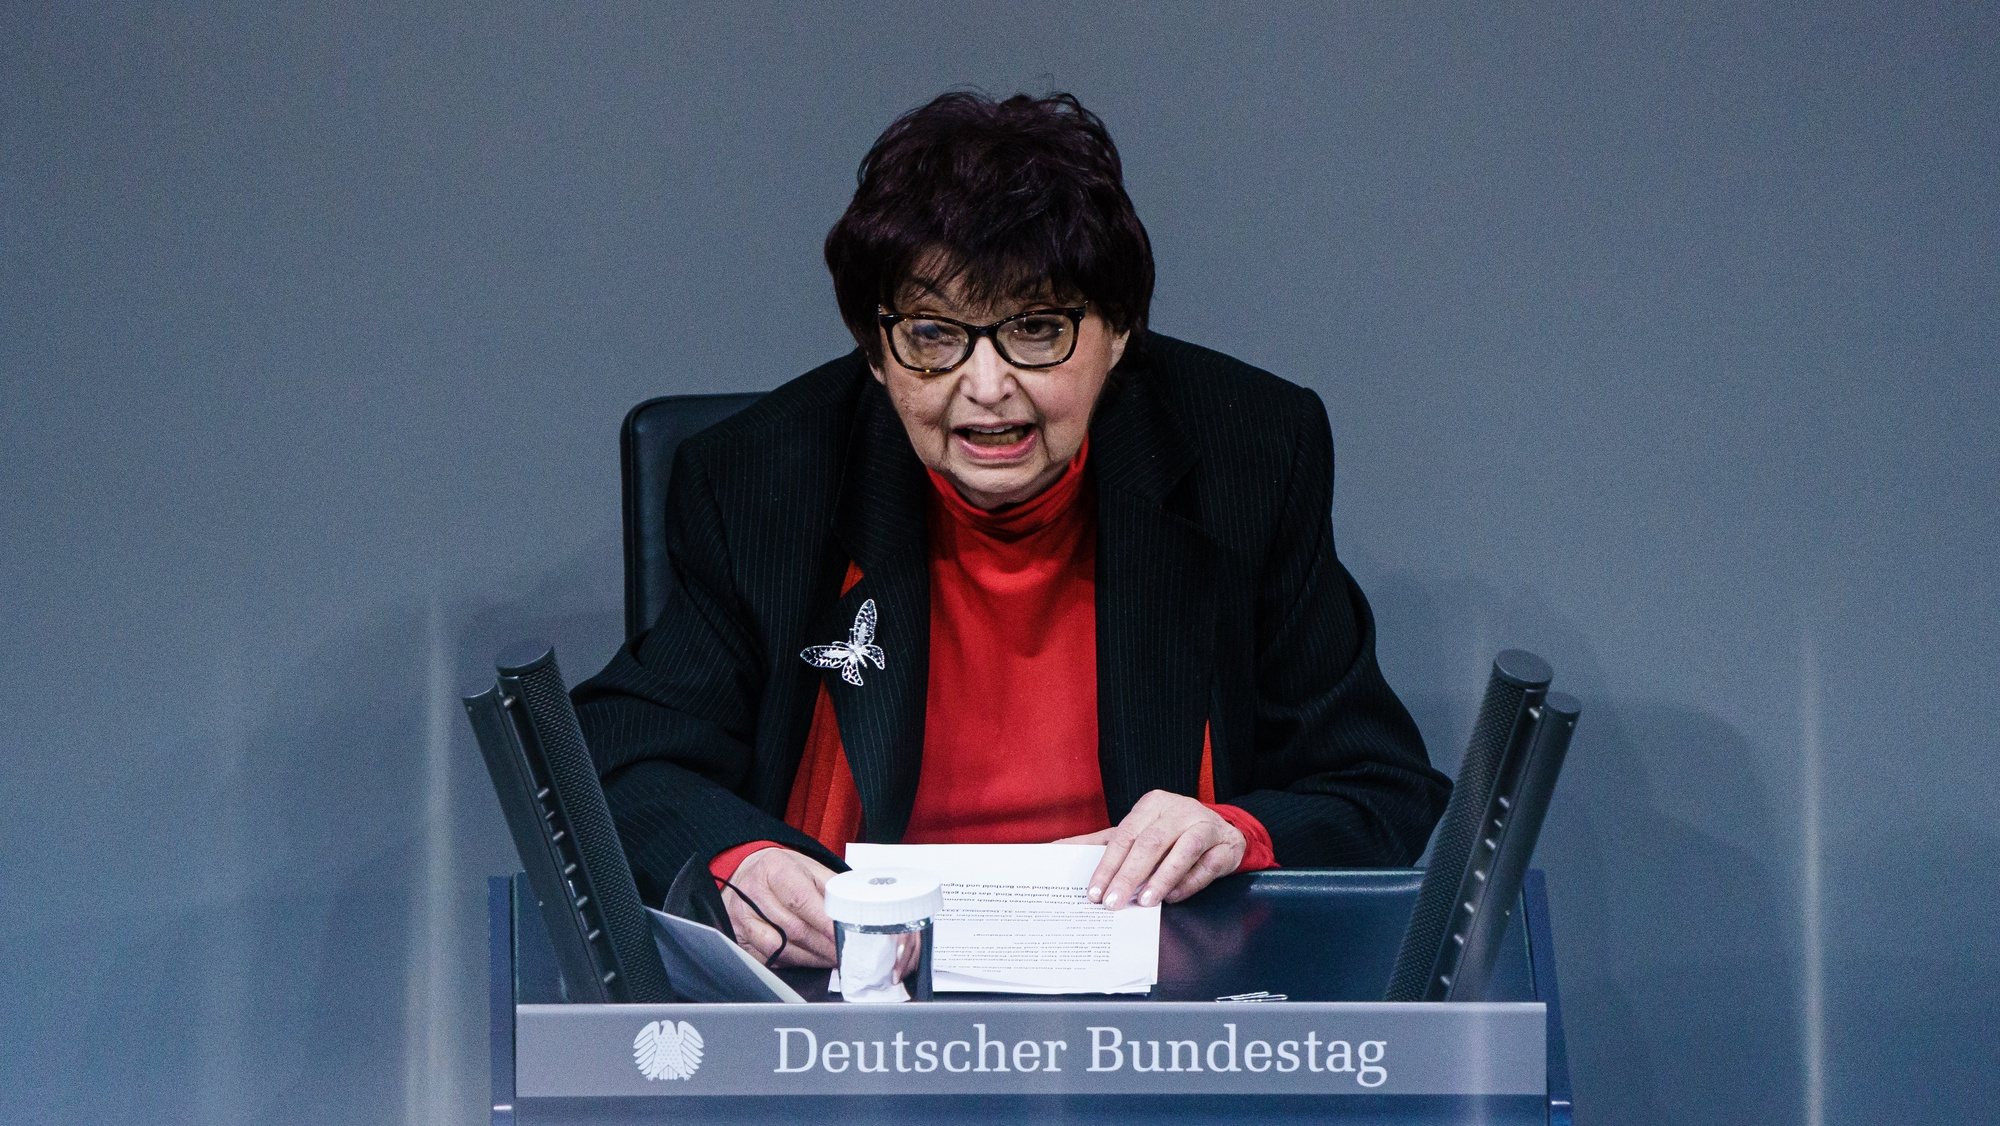 A sobrevivente do Holocausto Inge Auerbacher fala durante uma cerimónia comemorativa no parlamento alemão